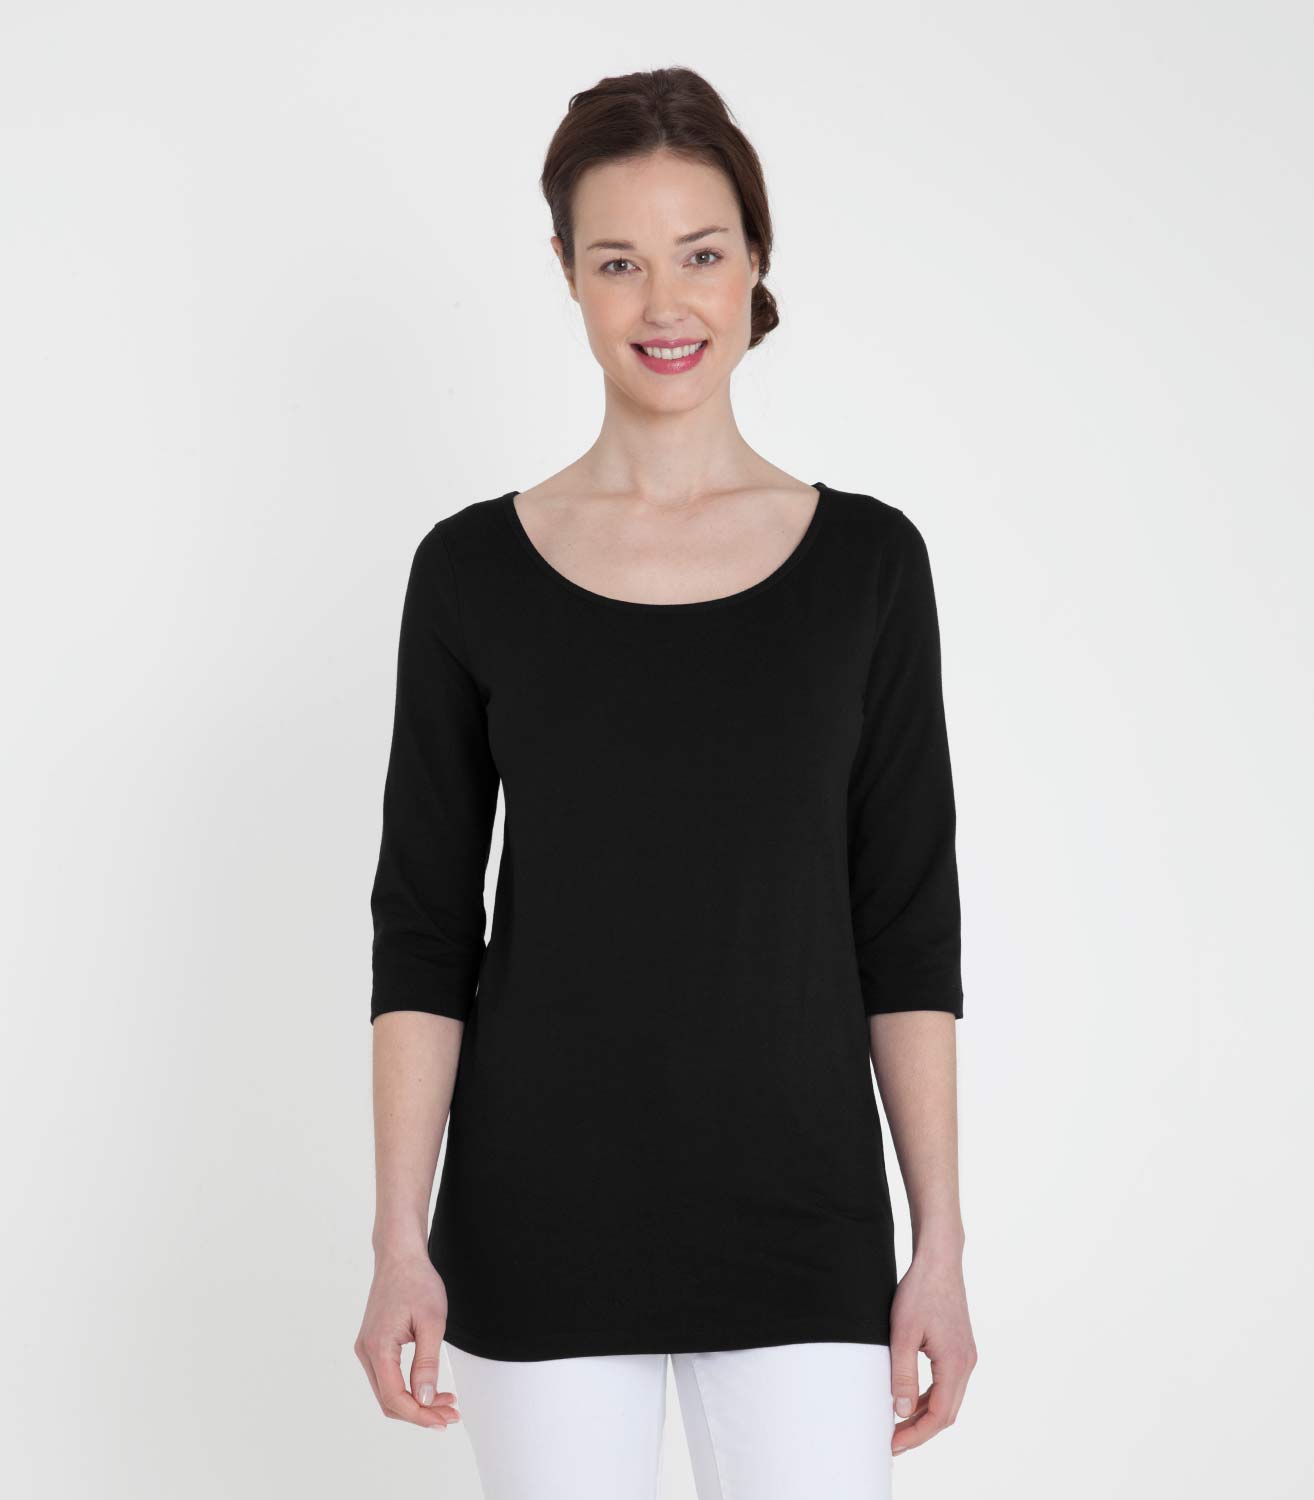 T-shirt tunique à manches 3/4 - Femme - Jersey L Noir ébène